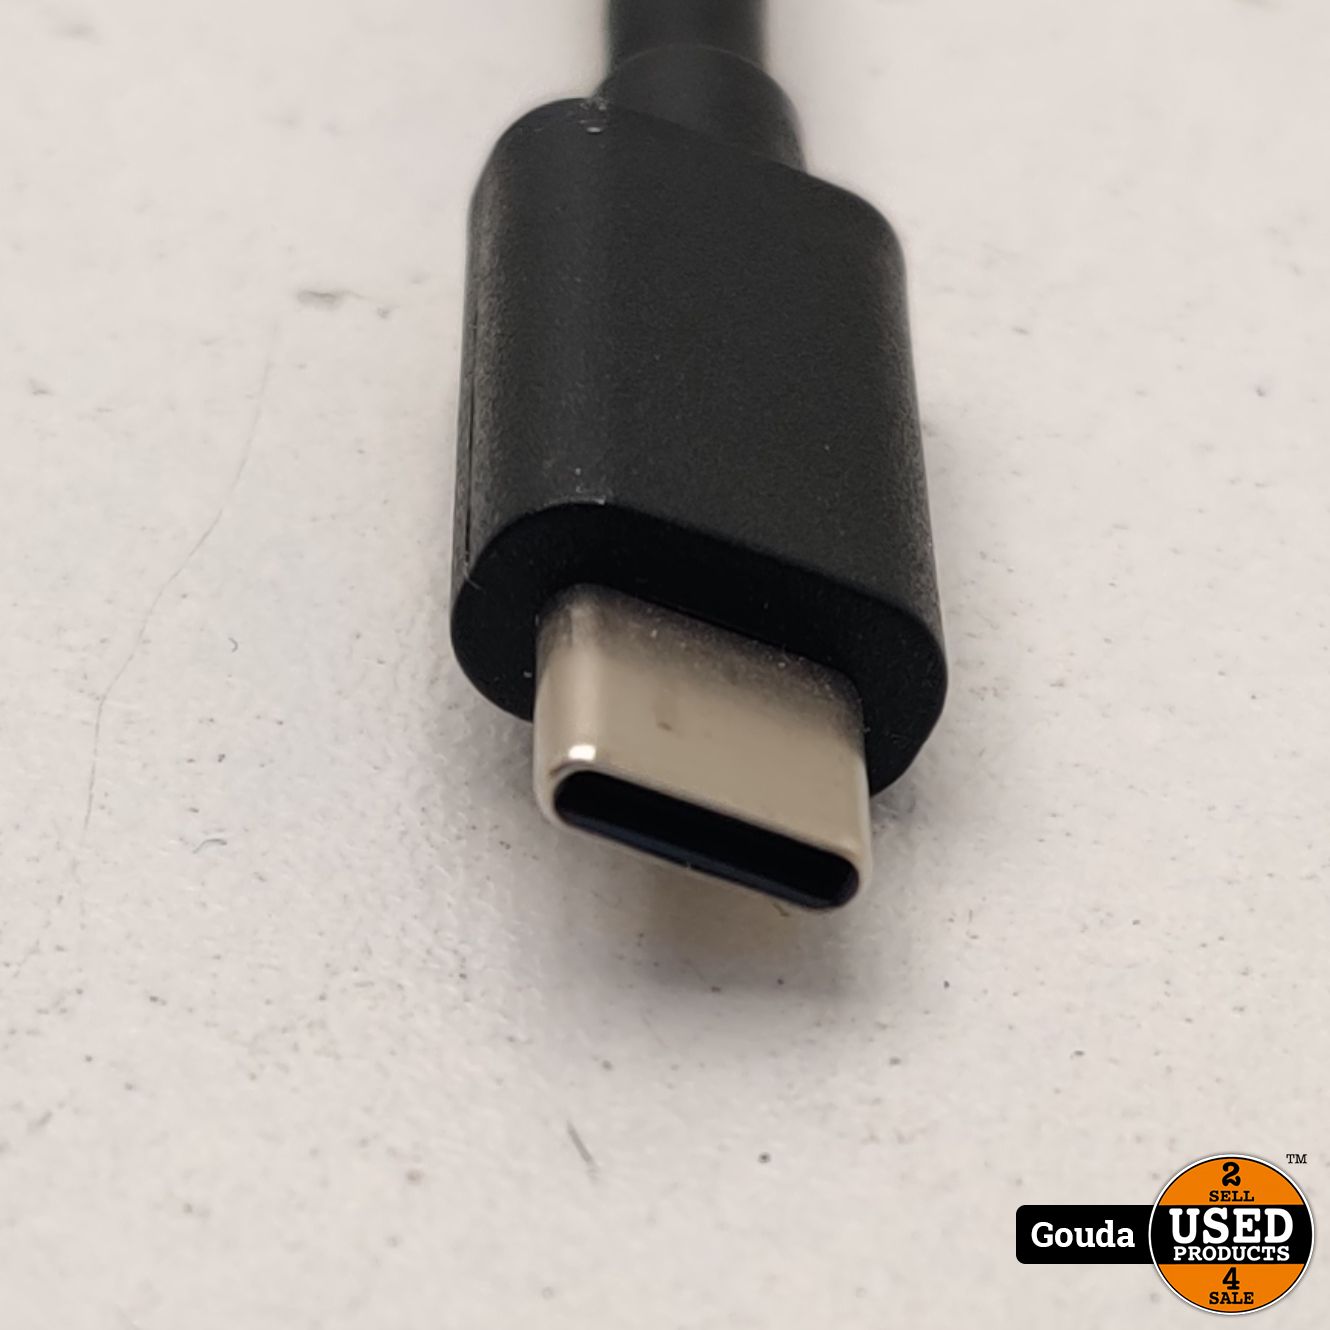 nakoming verbergen loterij USB C naar USB 3.0 kabel - Used Products Gouda